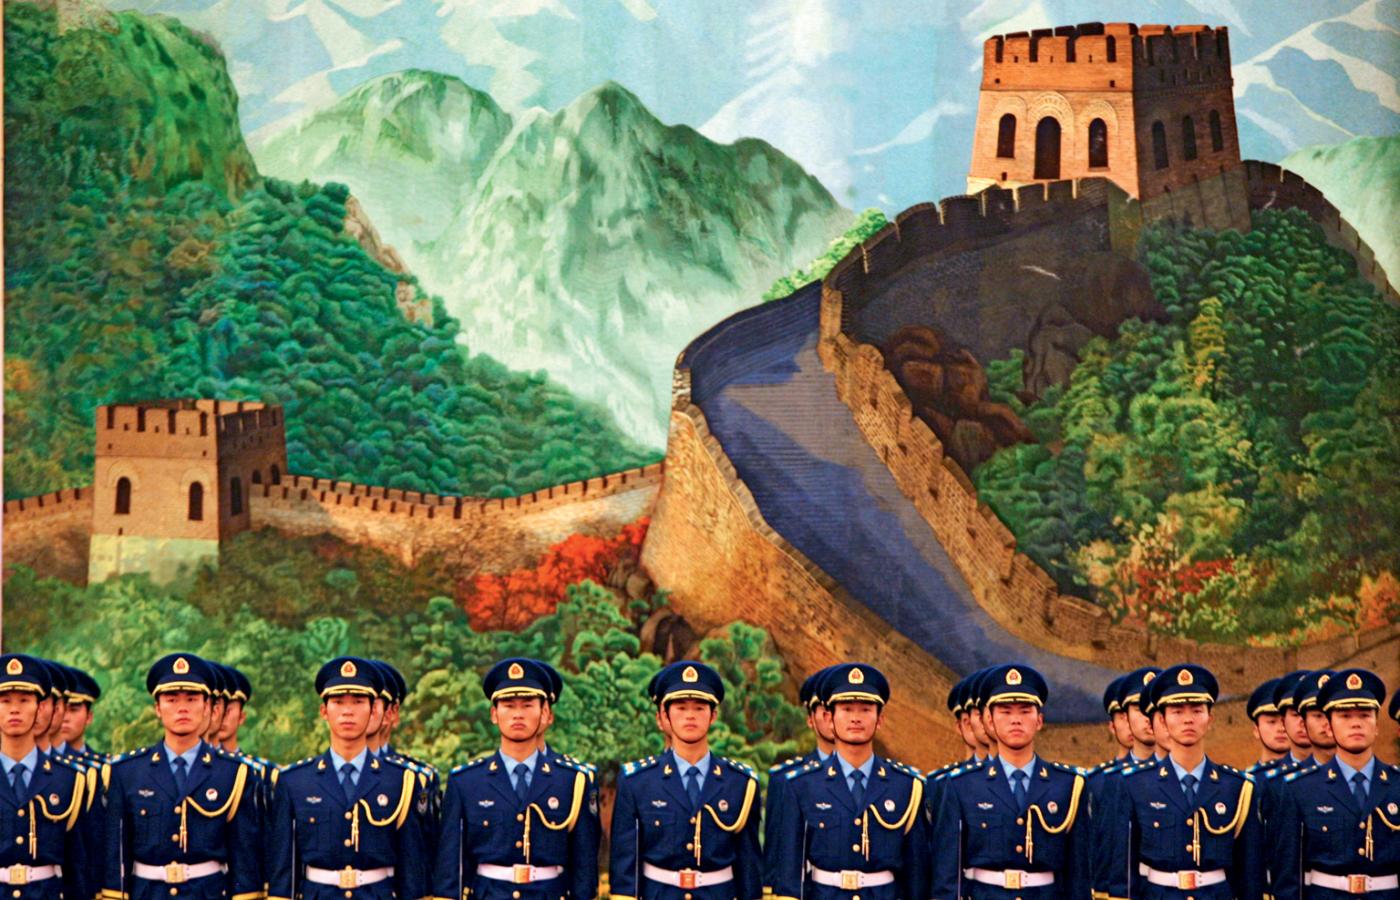 Ceremonia powitania prezydenta Baracka Obamy w Pekinie. Kompania honorowa na tle muralu przedstawiającego Wielki Mur.